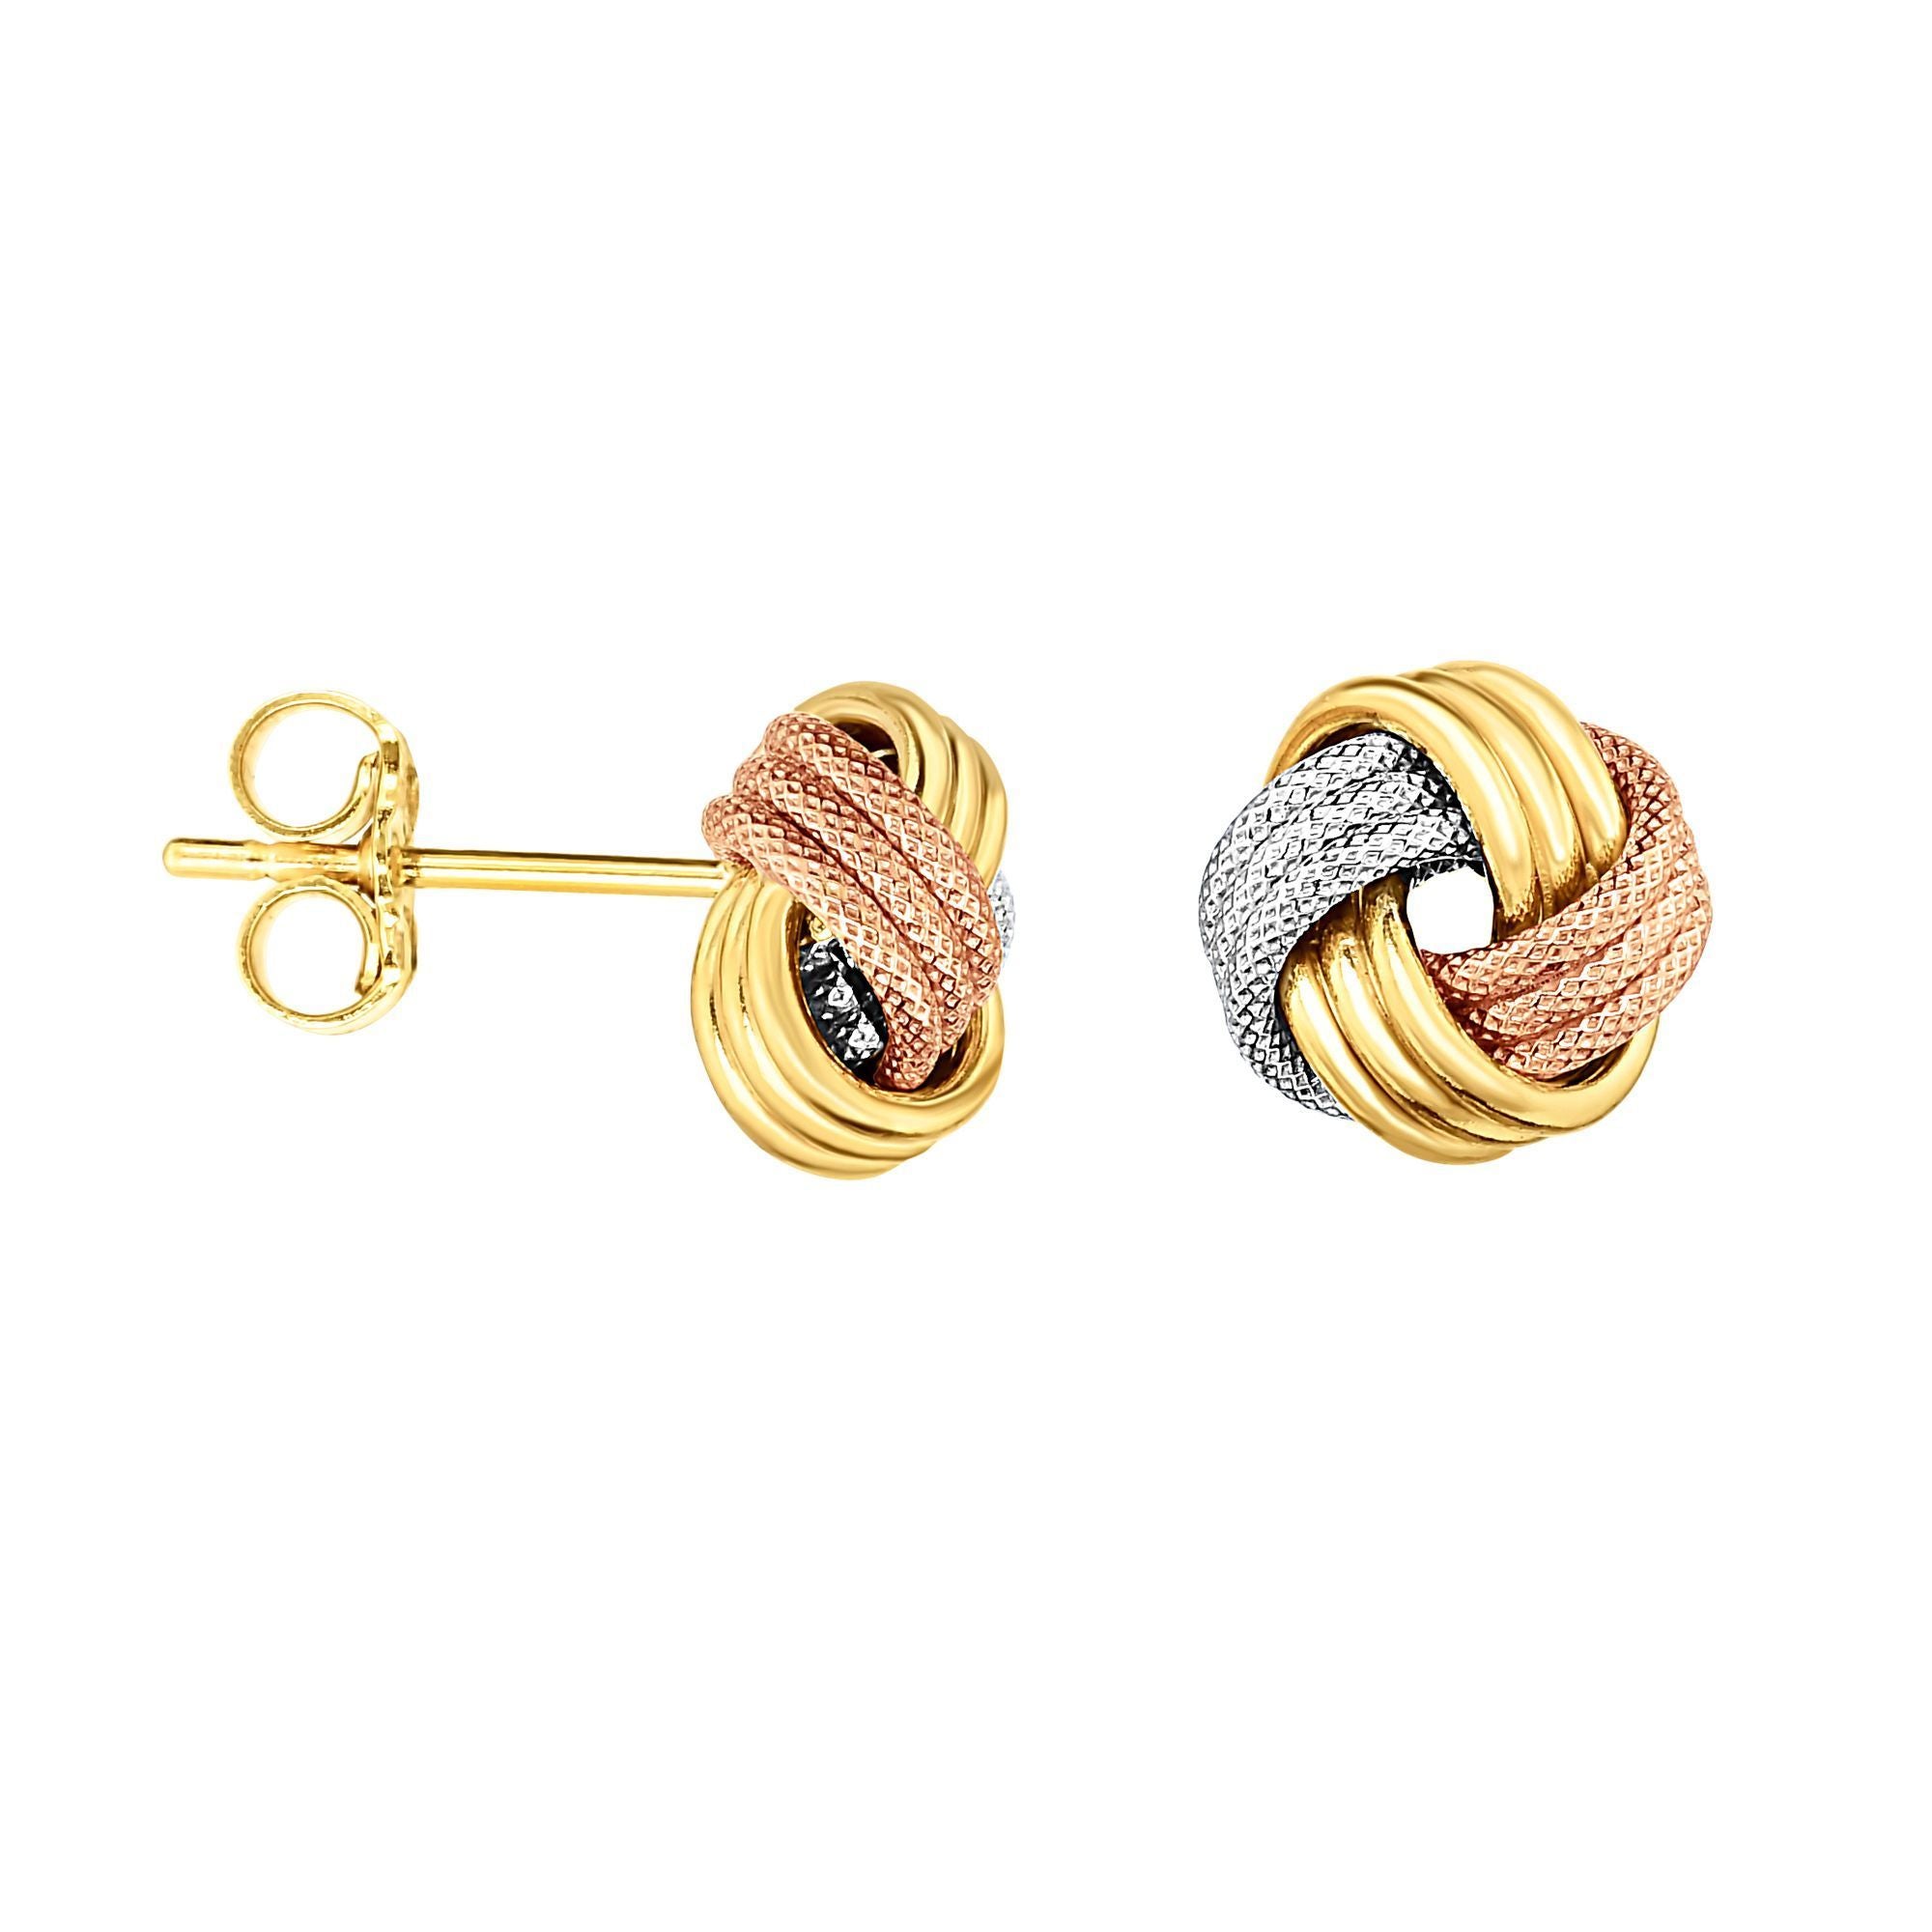 Minimalist 3 Row Love Knot Stud Push Back Earrings - wingroupjewelry